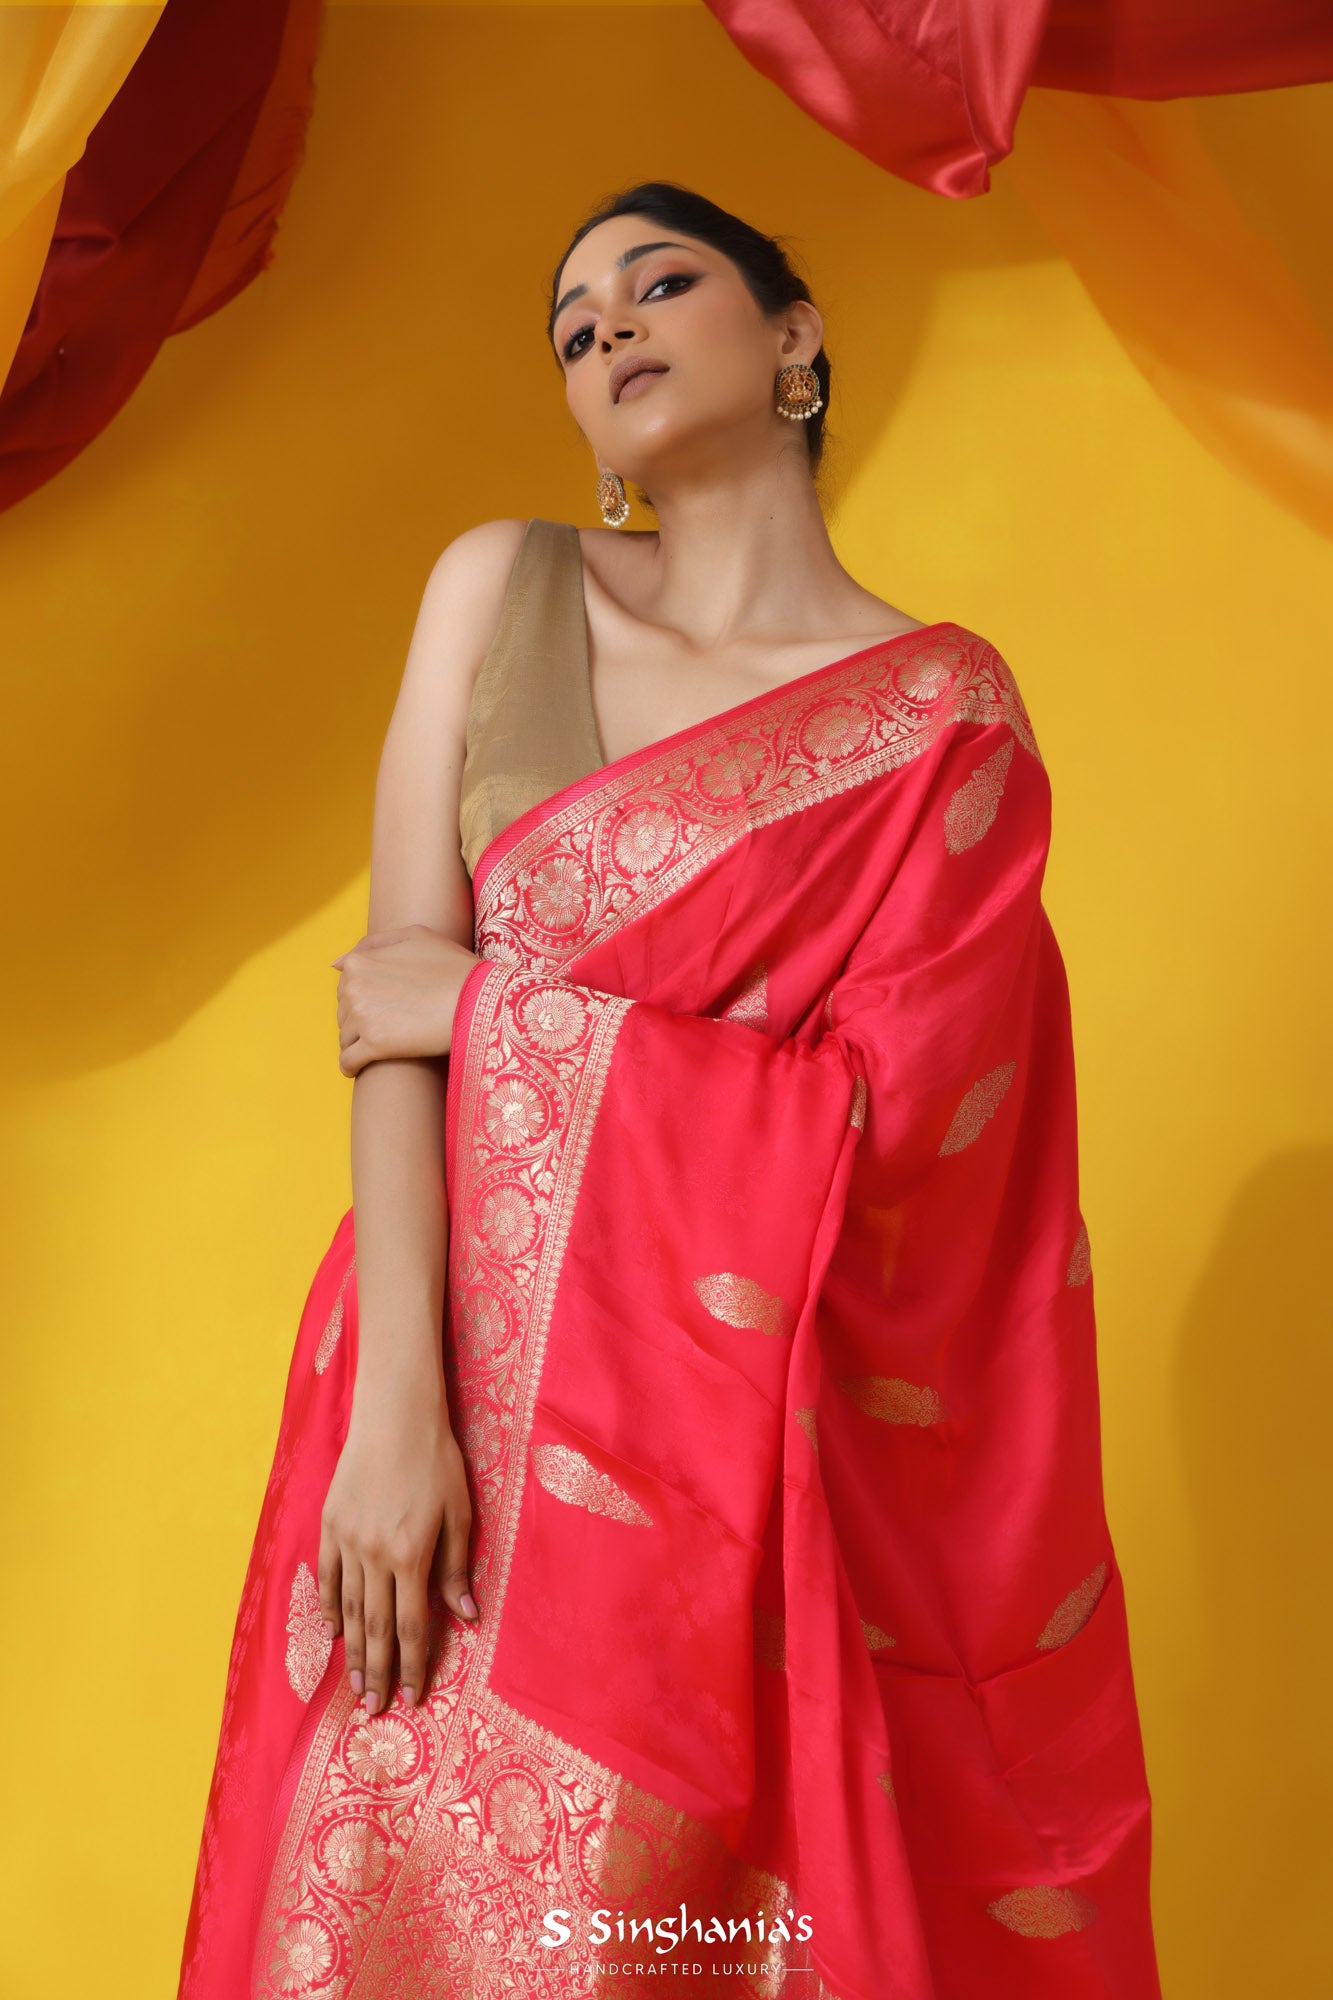 Alizarin Crimson Banarasi Satin Saree With Floral Buttas Design